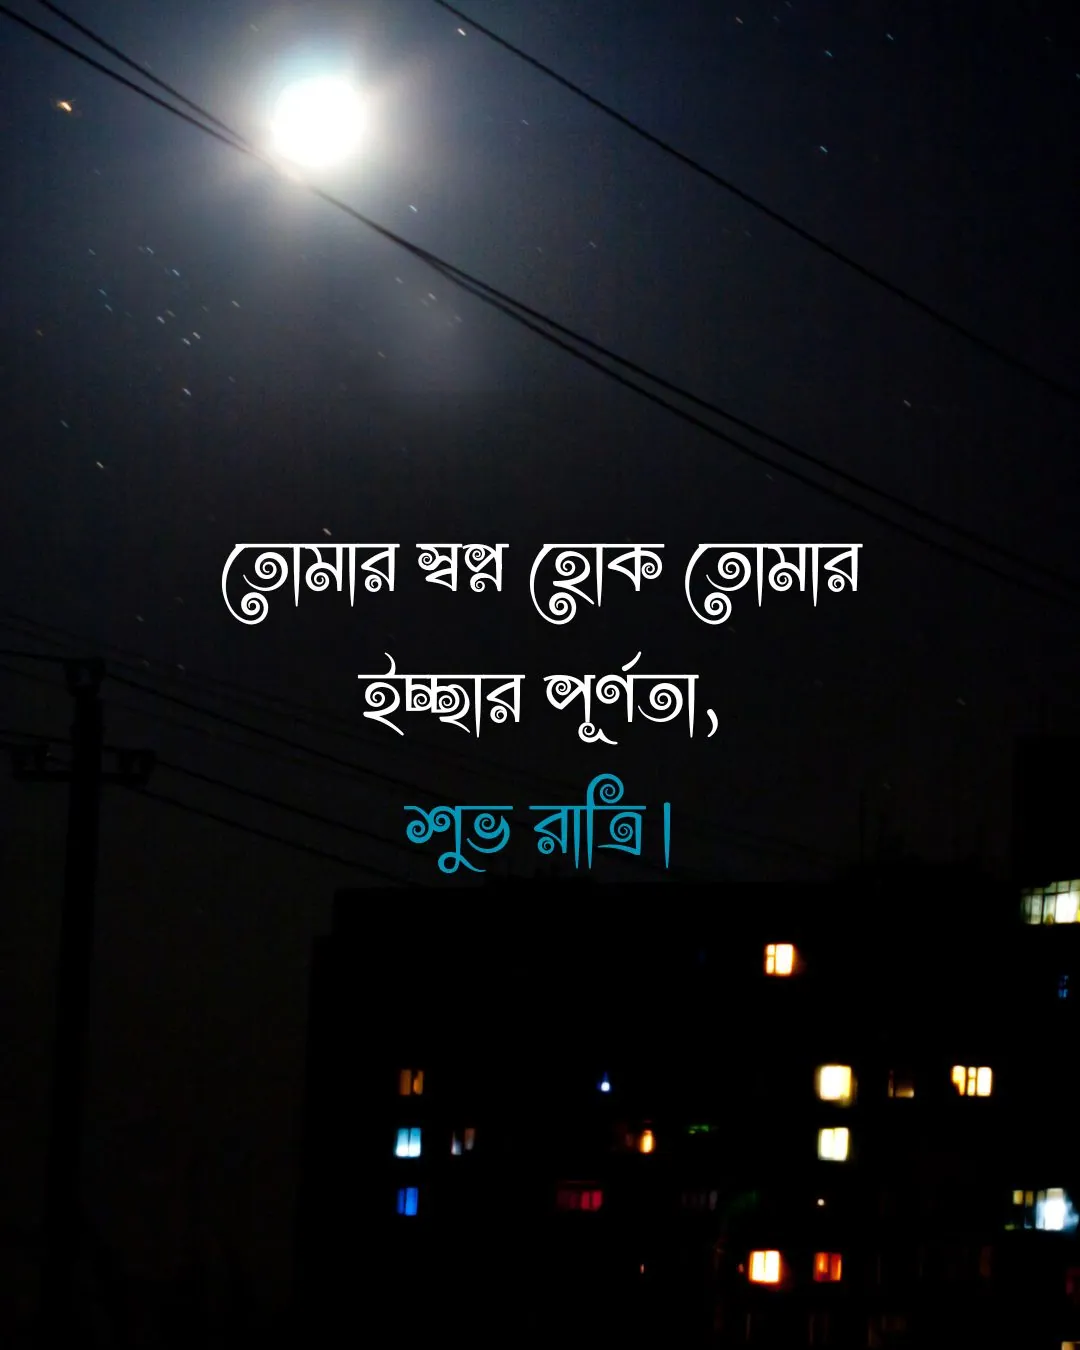 Good night in bengali - তোমার স্বপ্ন হোক তোমার ইচ্ছার পূর্ণতা, শুভ রাত্রি।